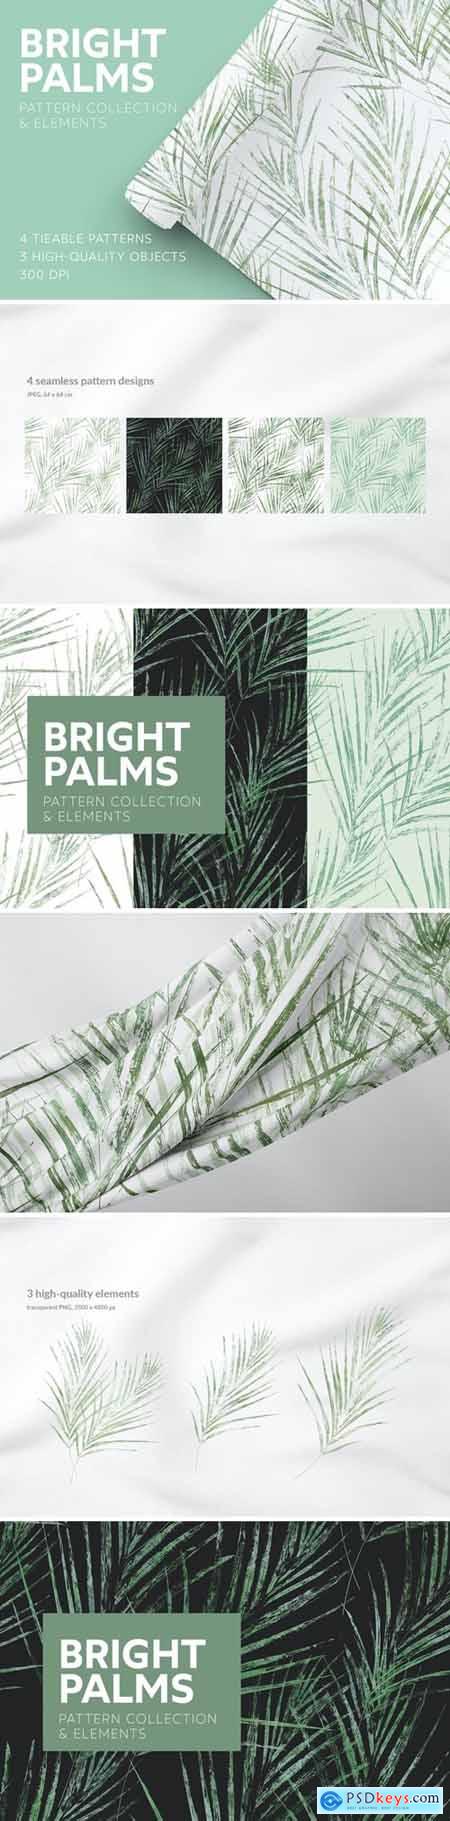 Bright Palms